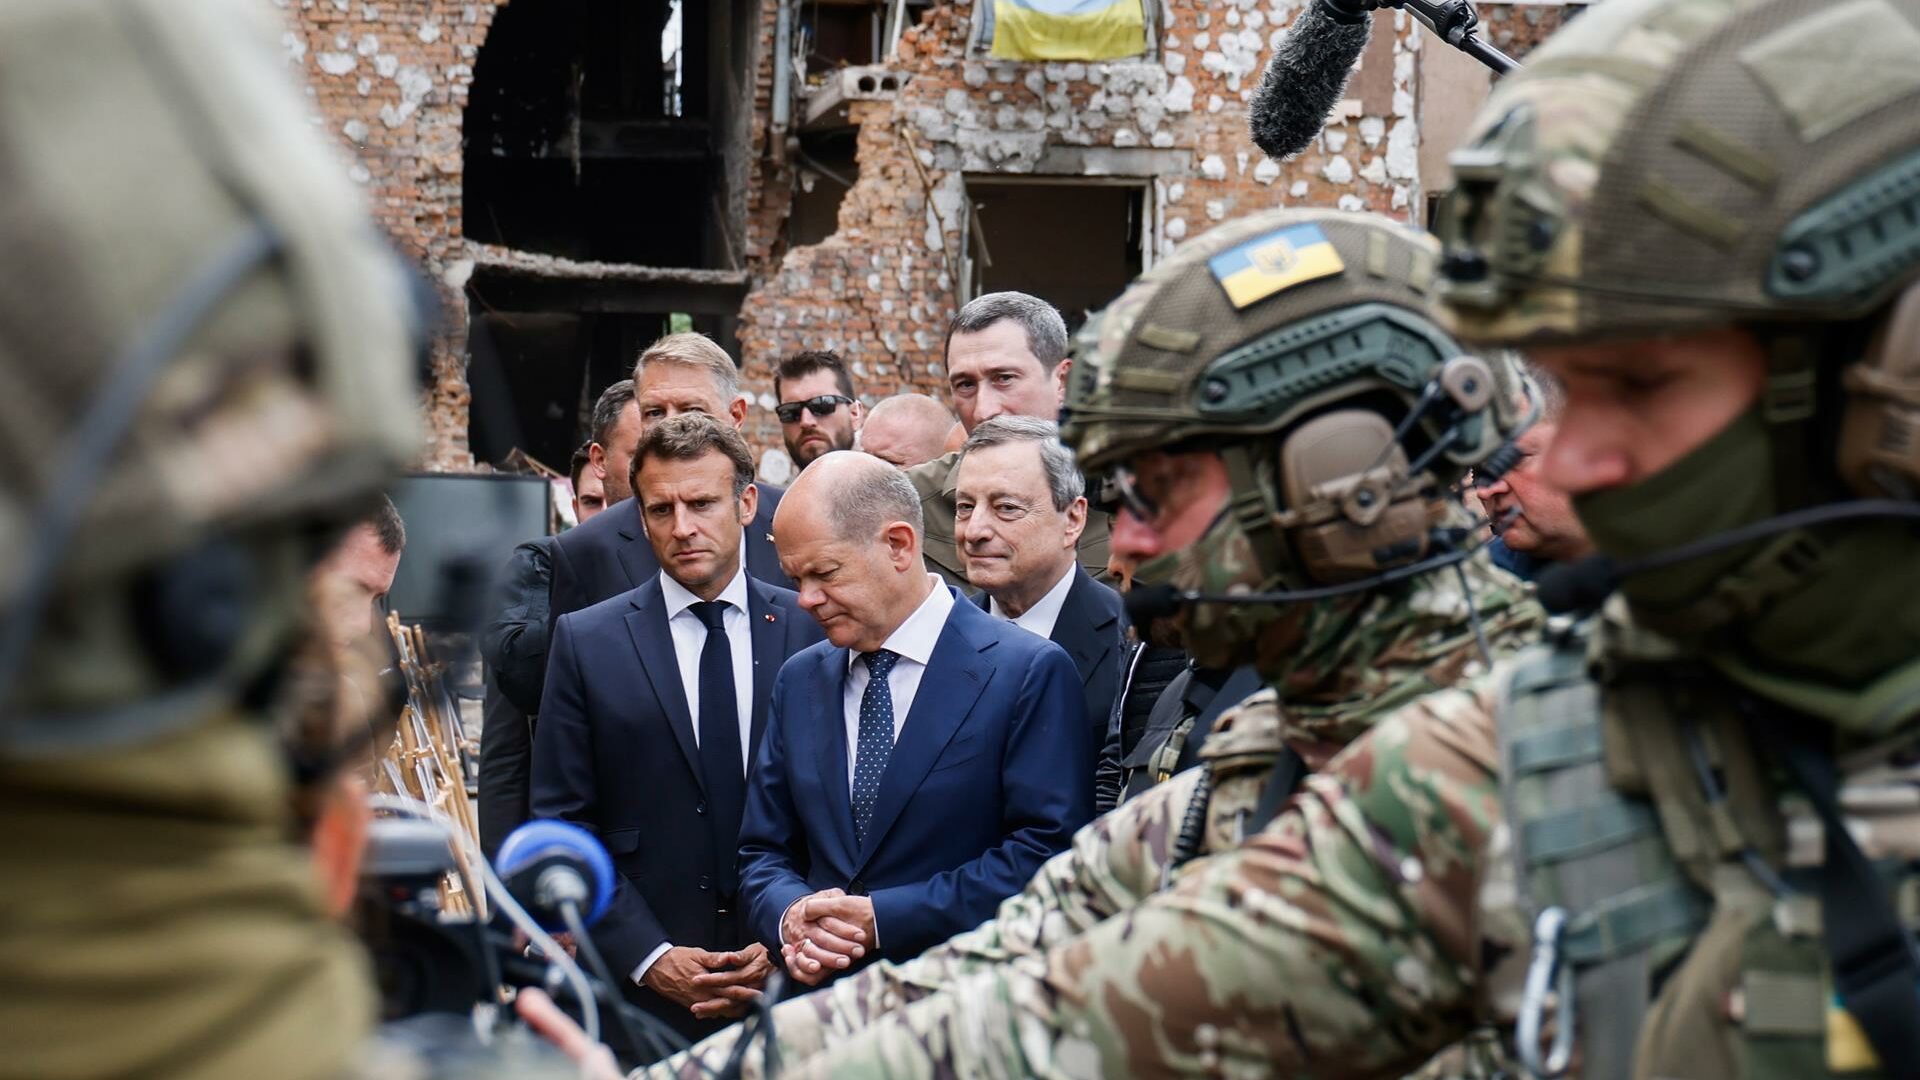 Última hora de la guerra en Ucrania, en directo: Scholz, Macron, Draghi y Iohannis visitan Irpin